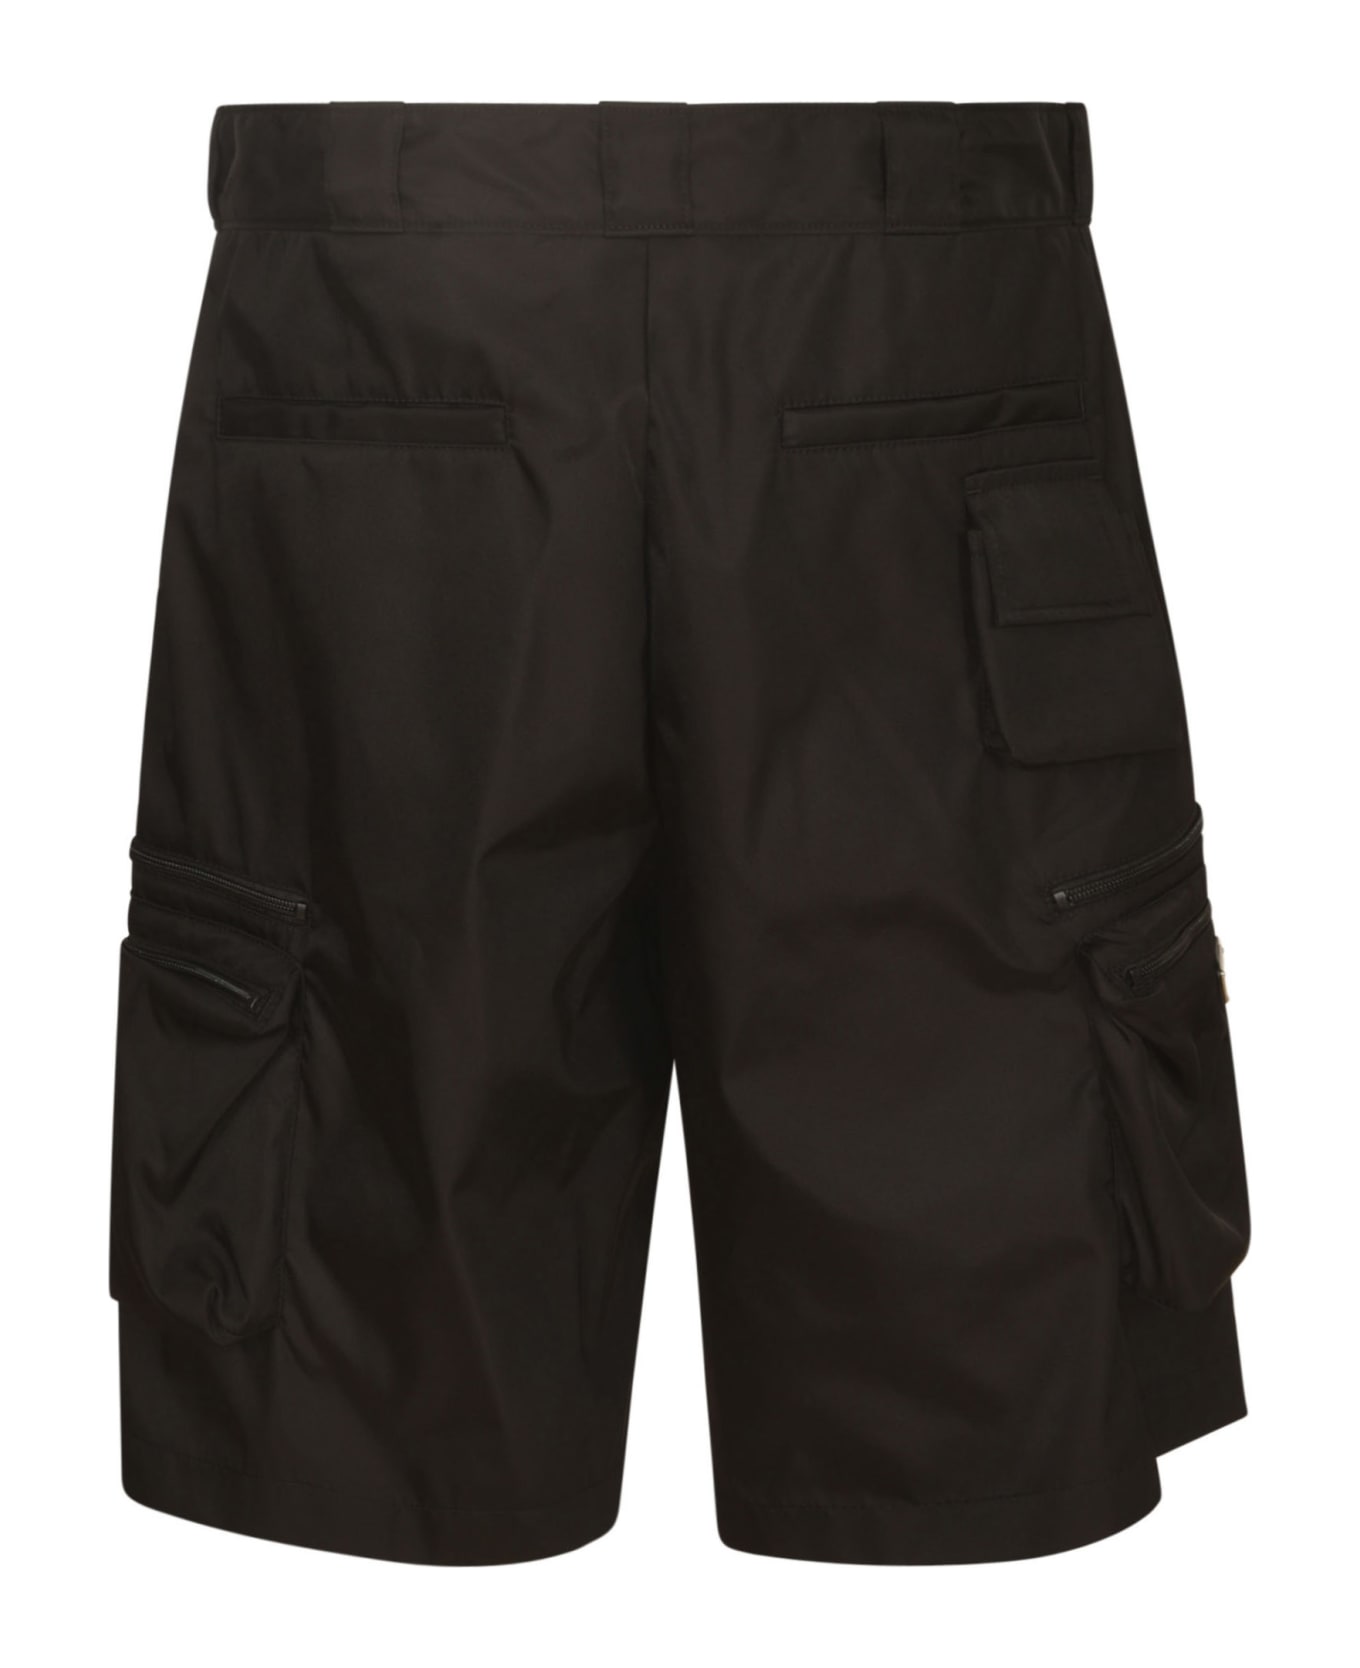 Prada Logo Plaque Zipped Shorts - Black